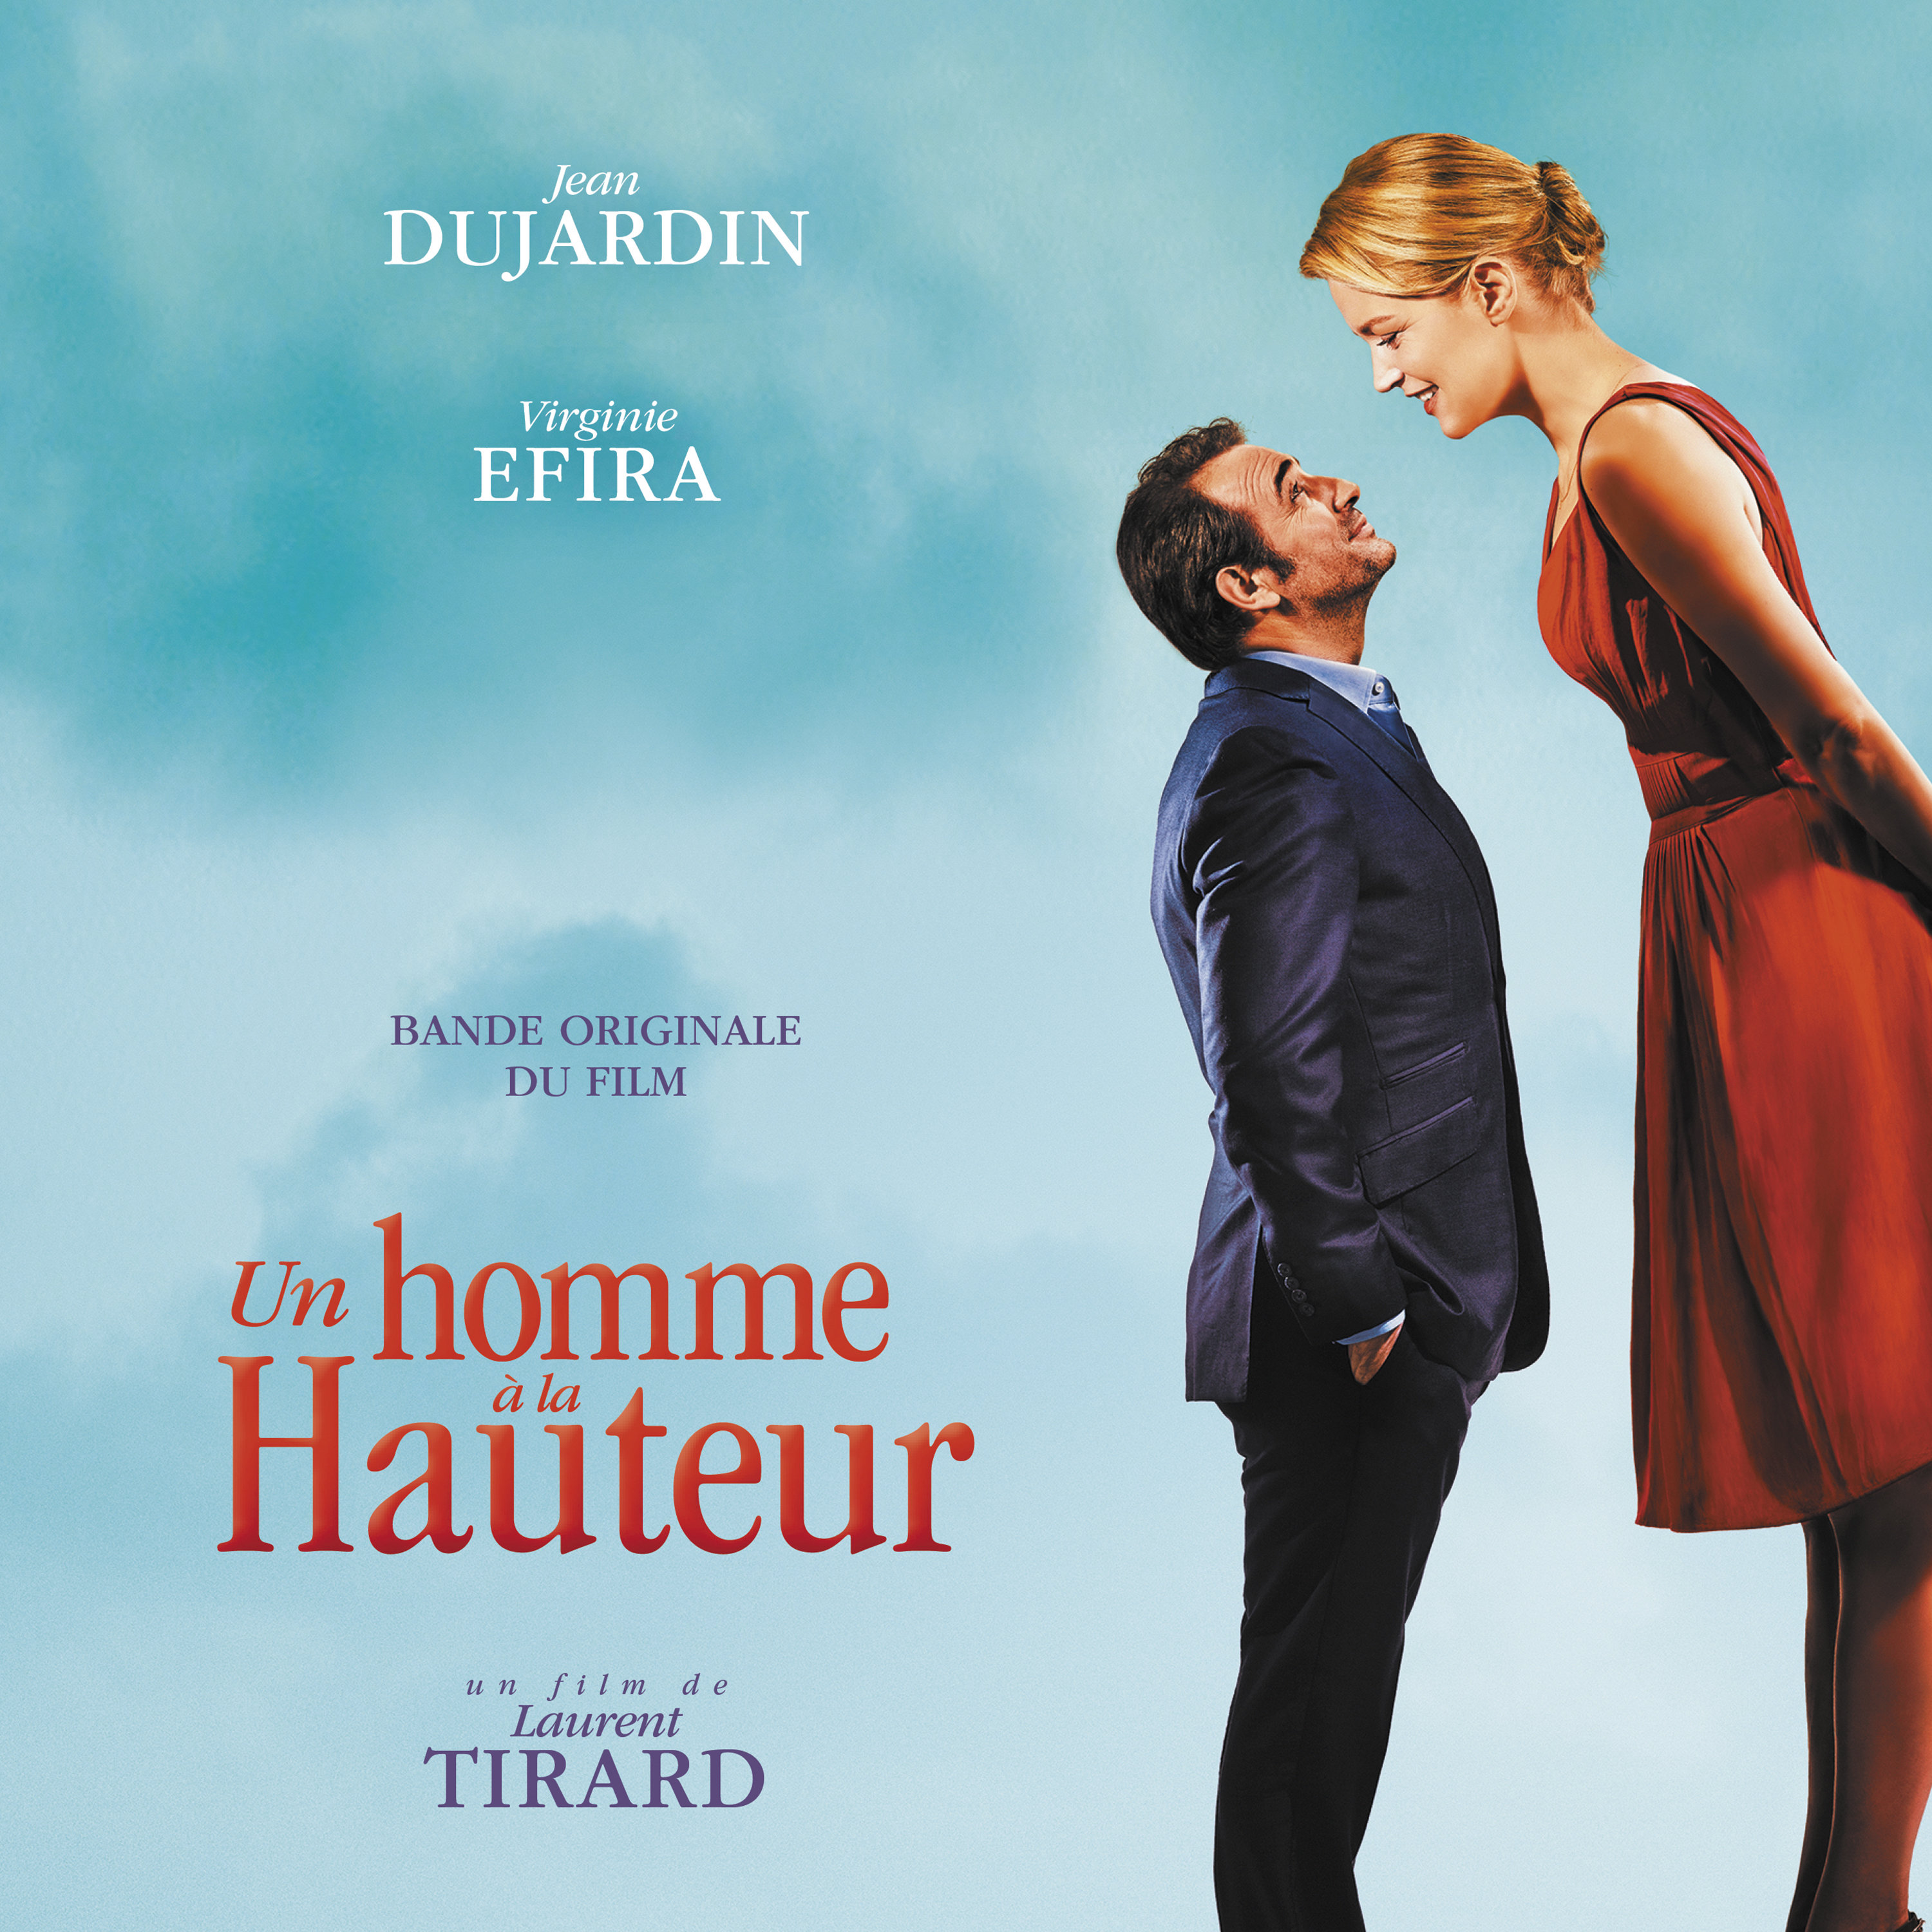 Pour un homme. Французские комедии про любовь. Любовь не по размеру на французском.